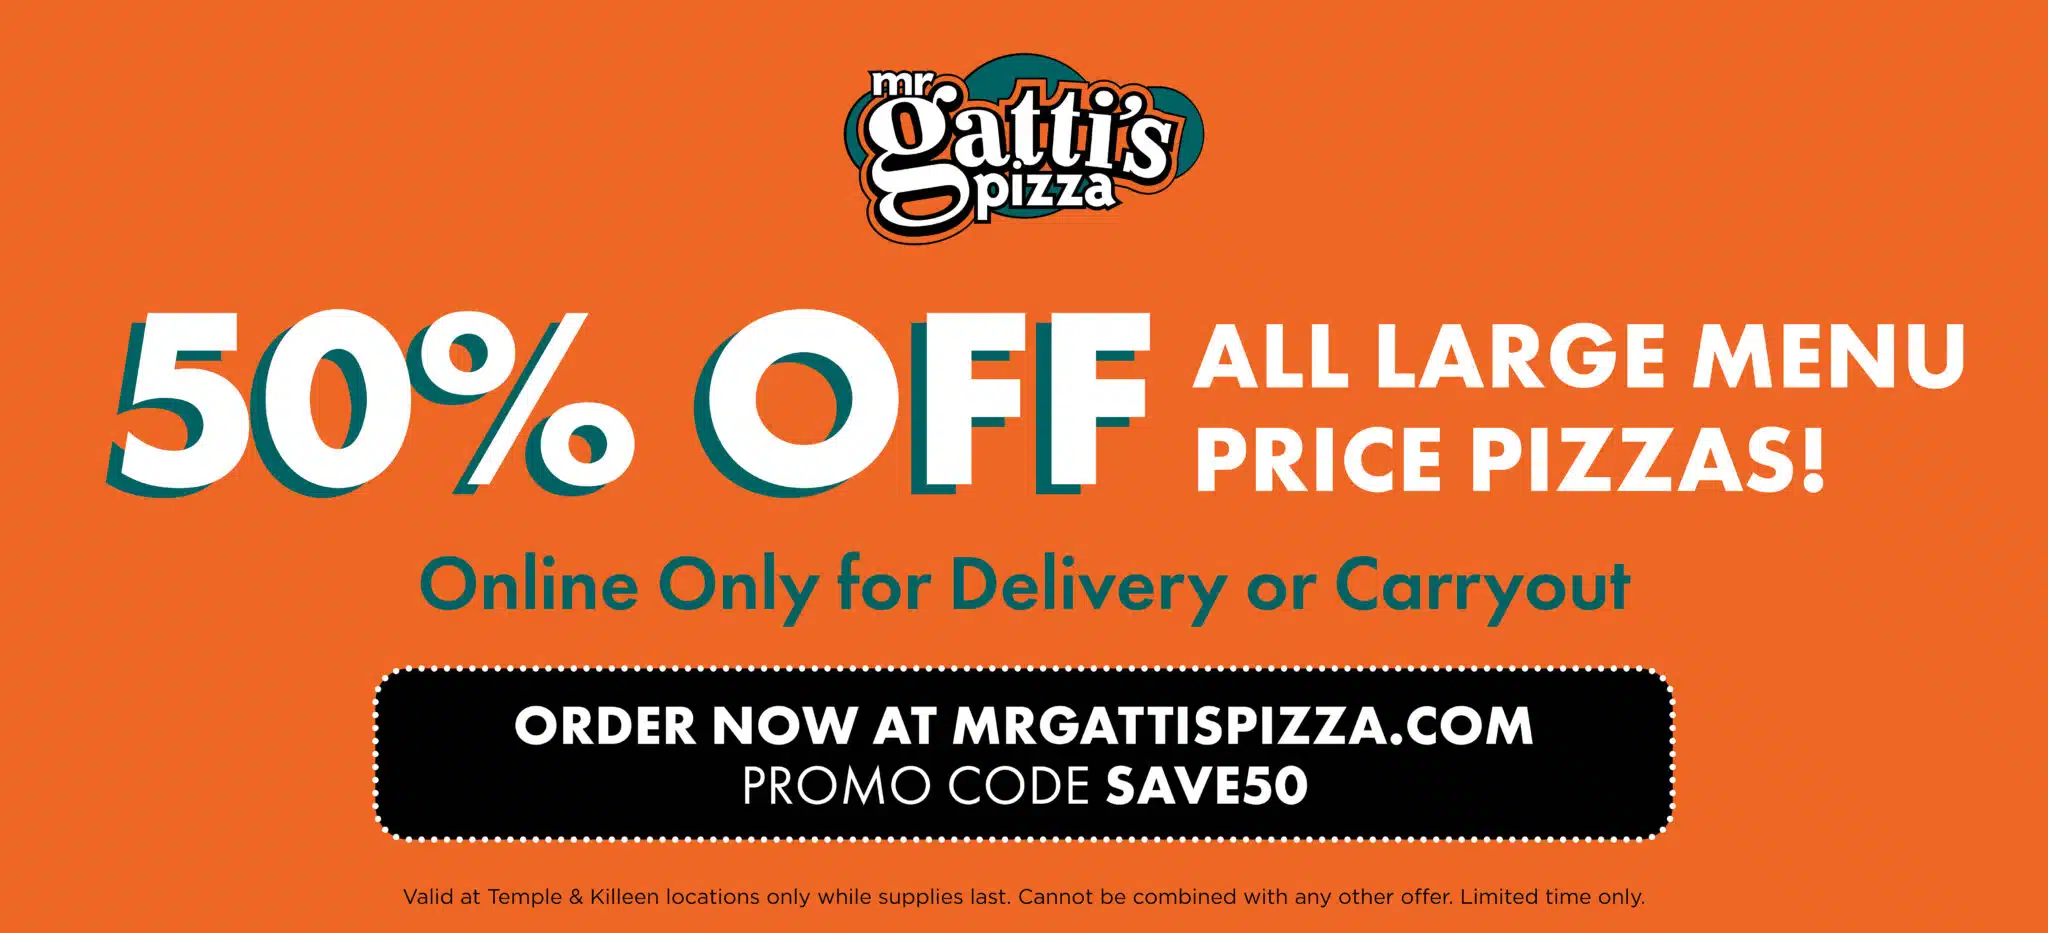 Mr Gatti's Pizza Mr Gatti's Pizza 50% off Large Pizzas Graphic